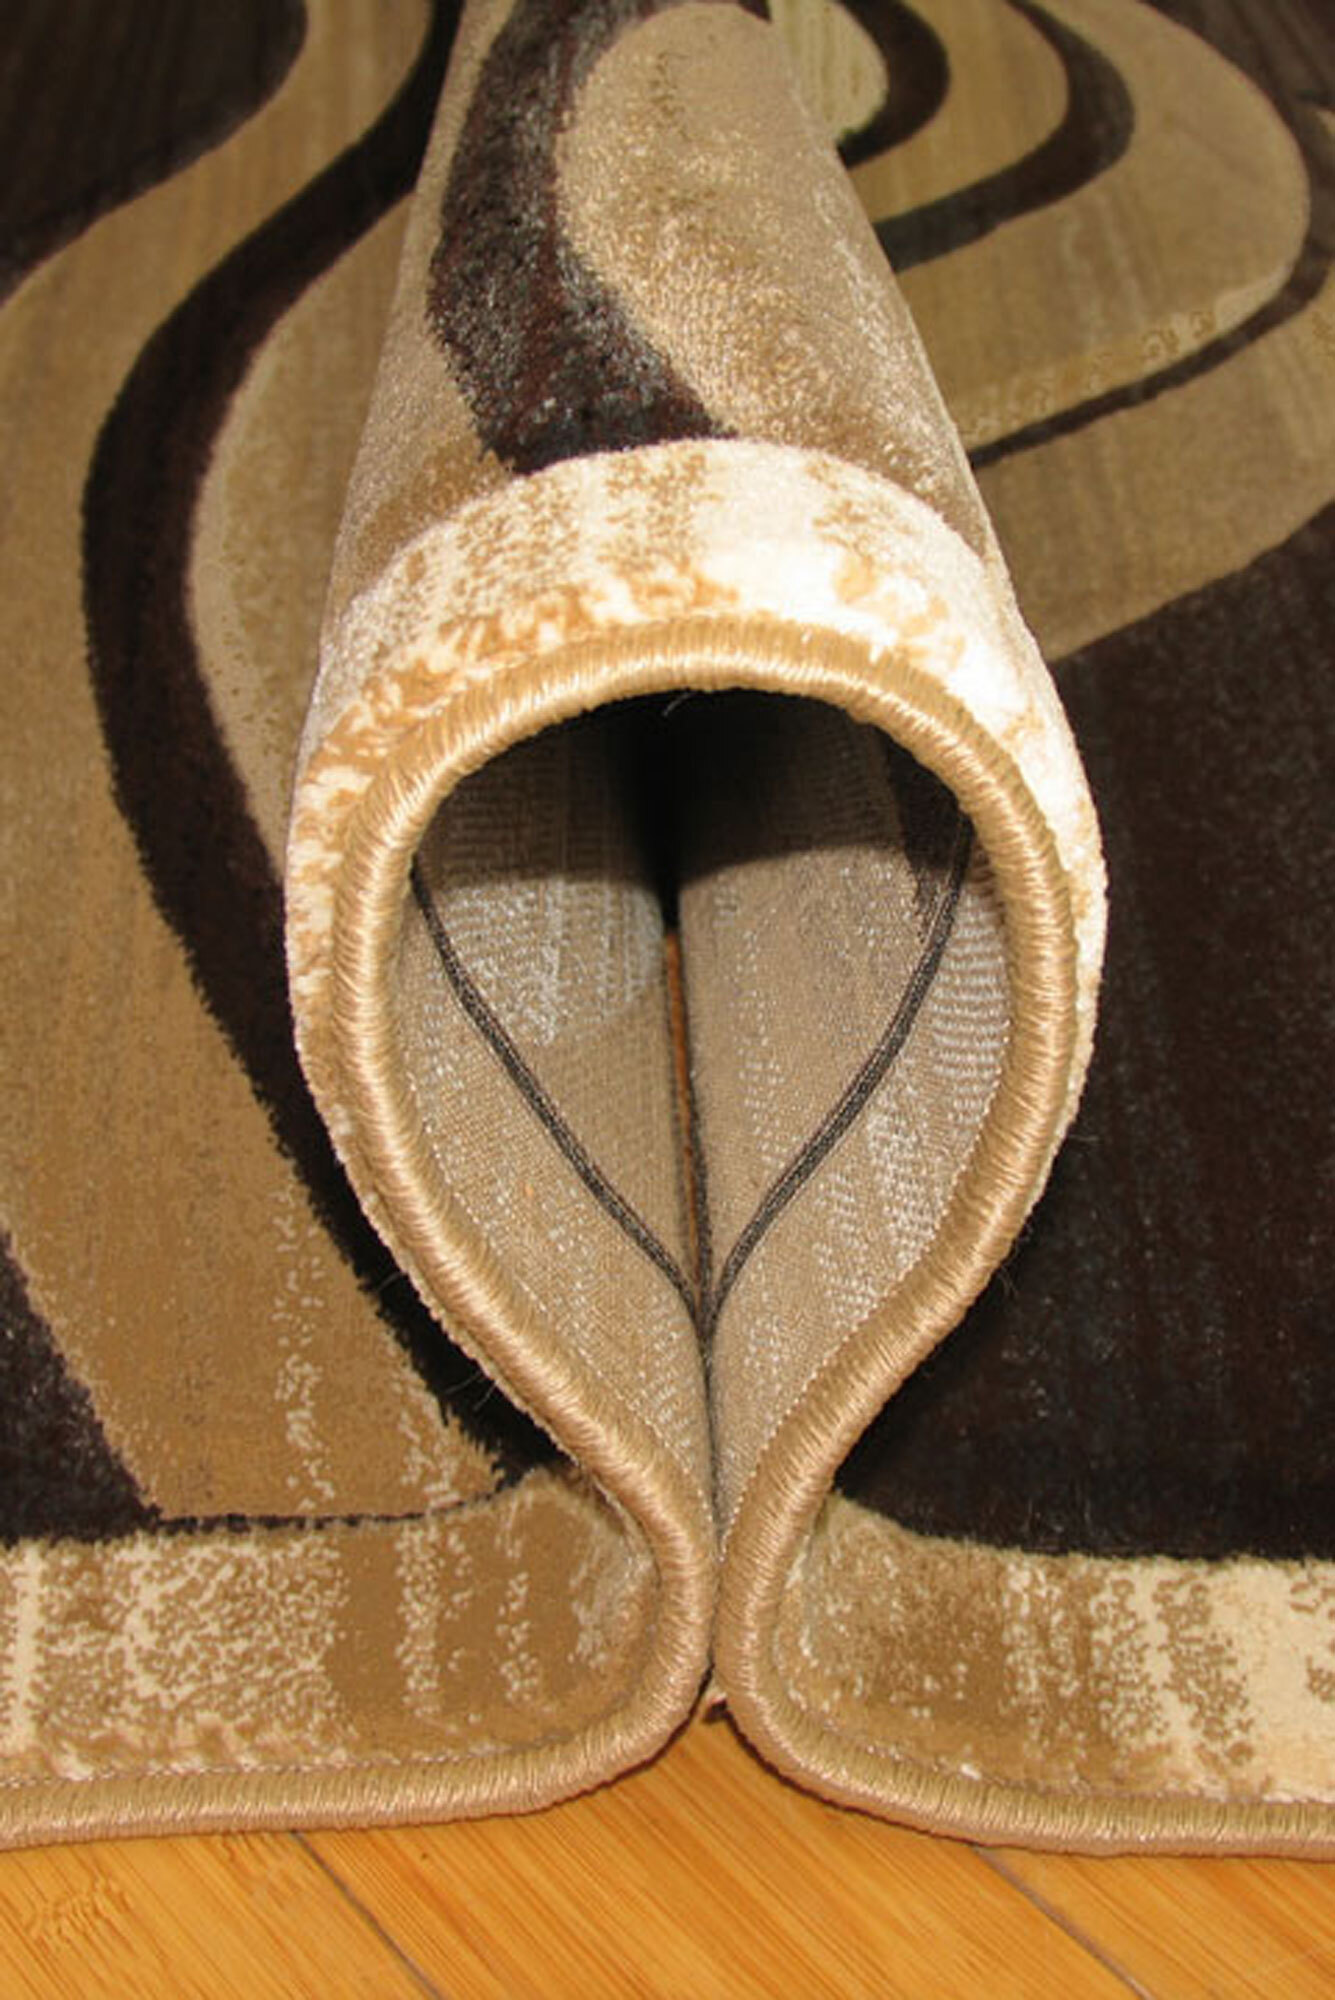 Panama Beige Wavy Carved Rug